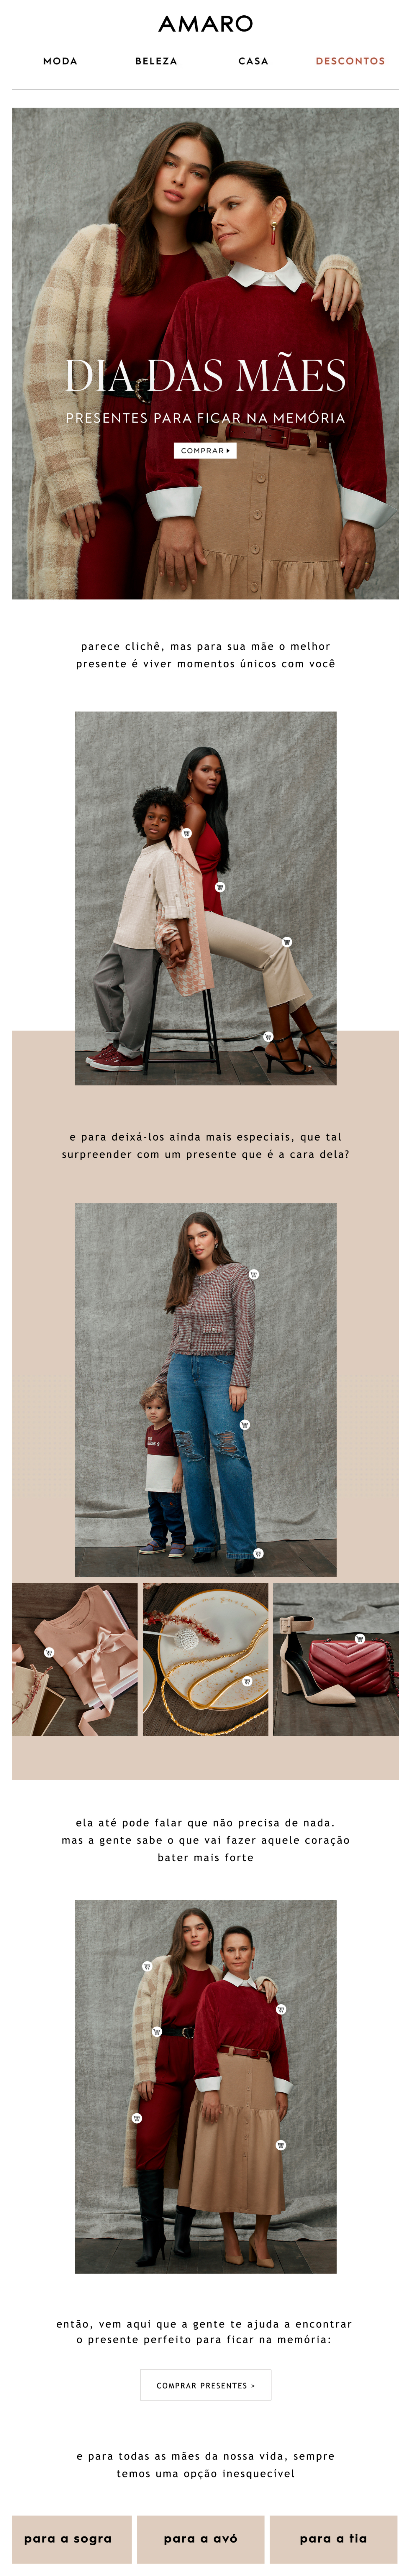 Exemplo de email marketing de Dia das Mães Amaro